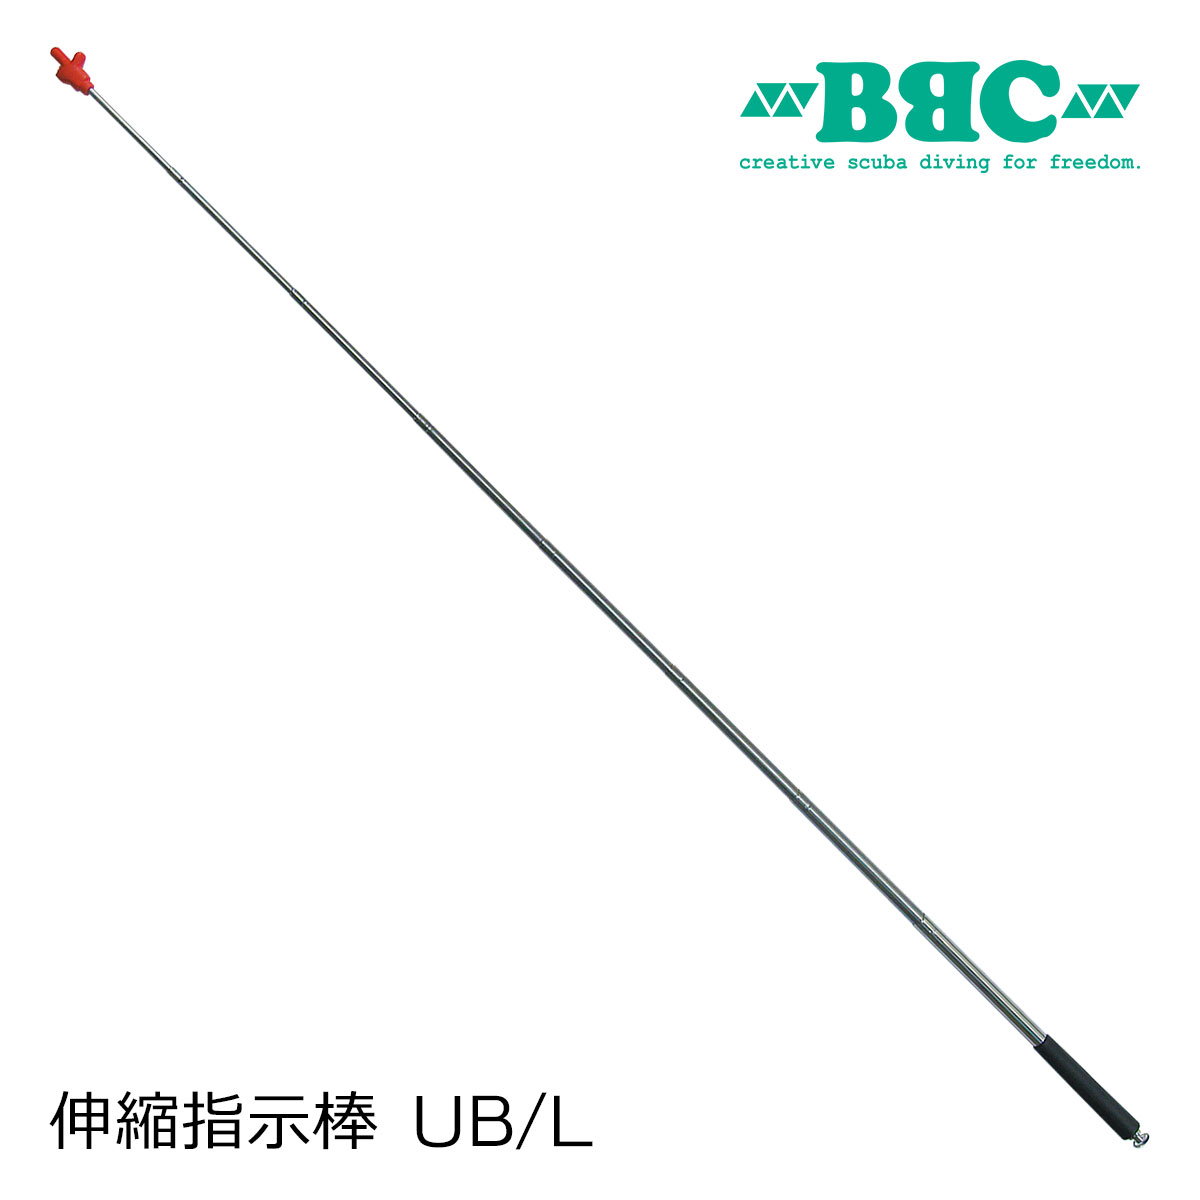 BBC ビービーシー 伸縮指示棒 UB/L 日本製 ユービー 伸びる指示棒 スキューバダイビング 支持棒